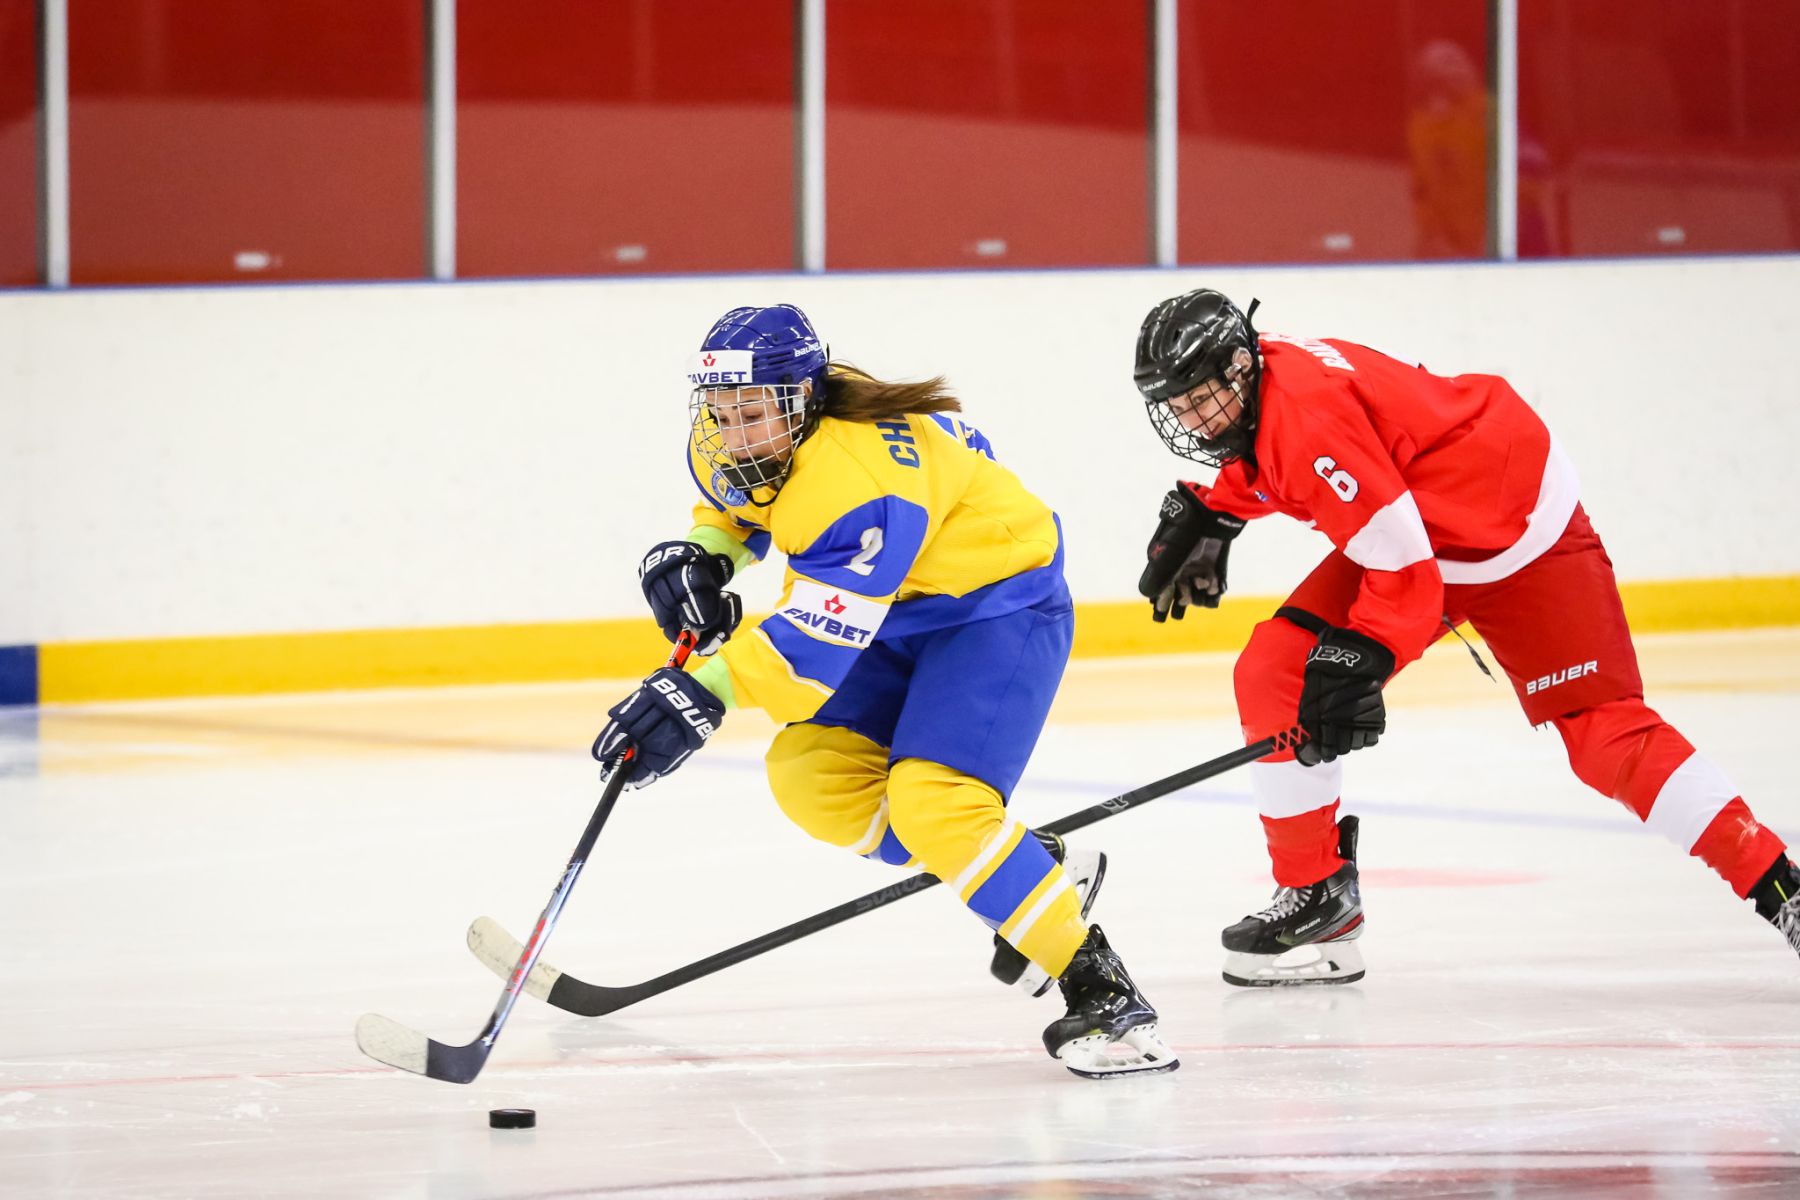 OAR-GER GMG - Olympic - International Ice Hockey Federation IIHF